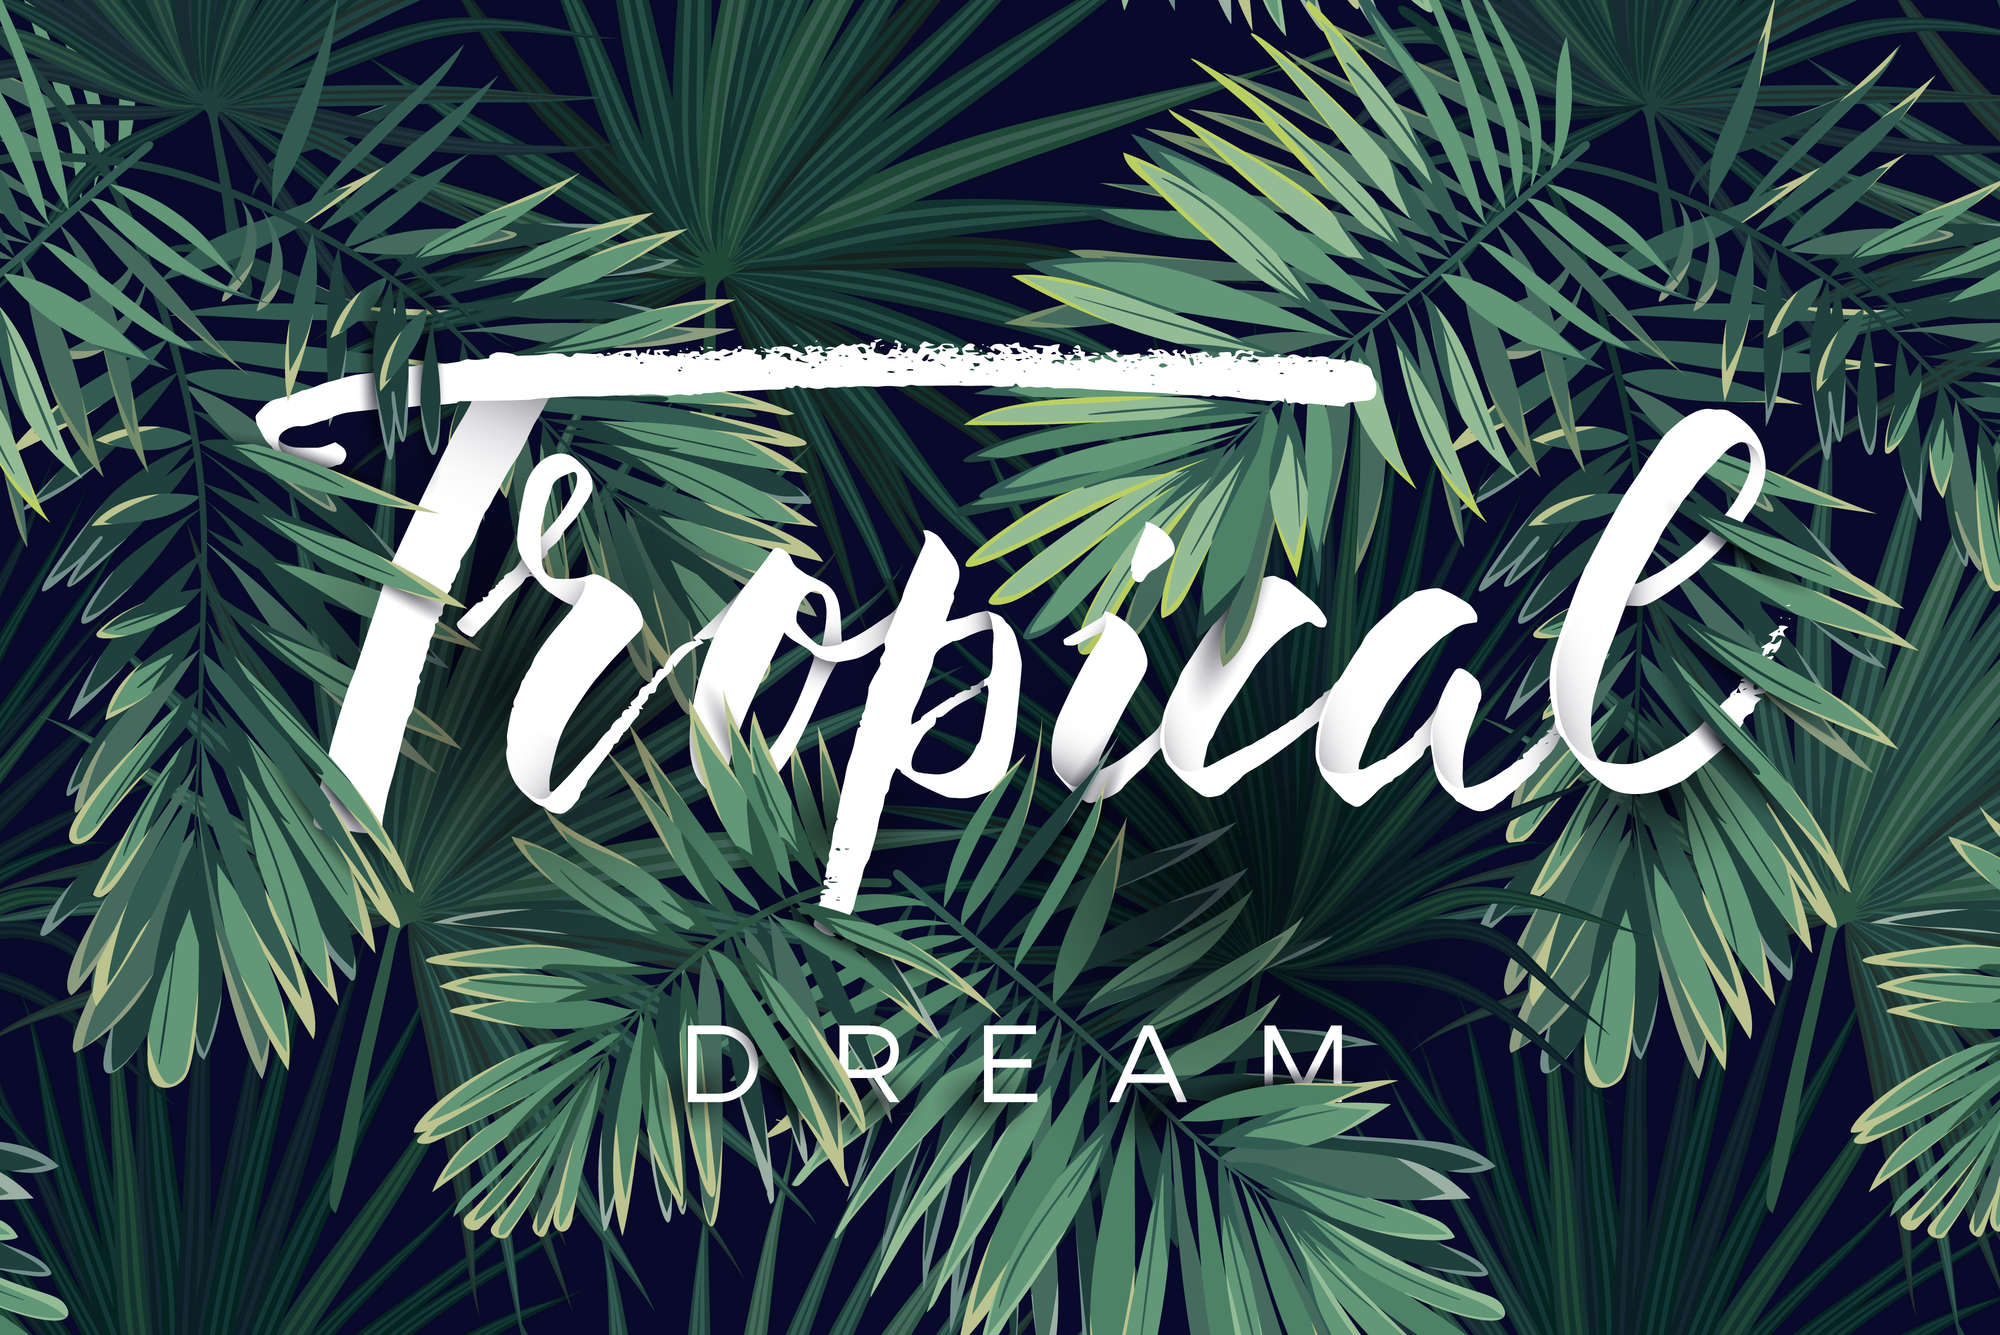             Carta da parati grafica con scritta "Tropical Dream" su tessuto non tessuto liscio di prima qualità
        